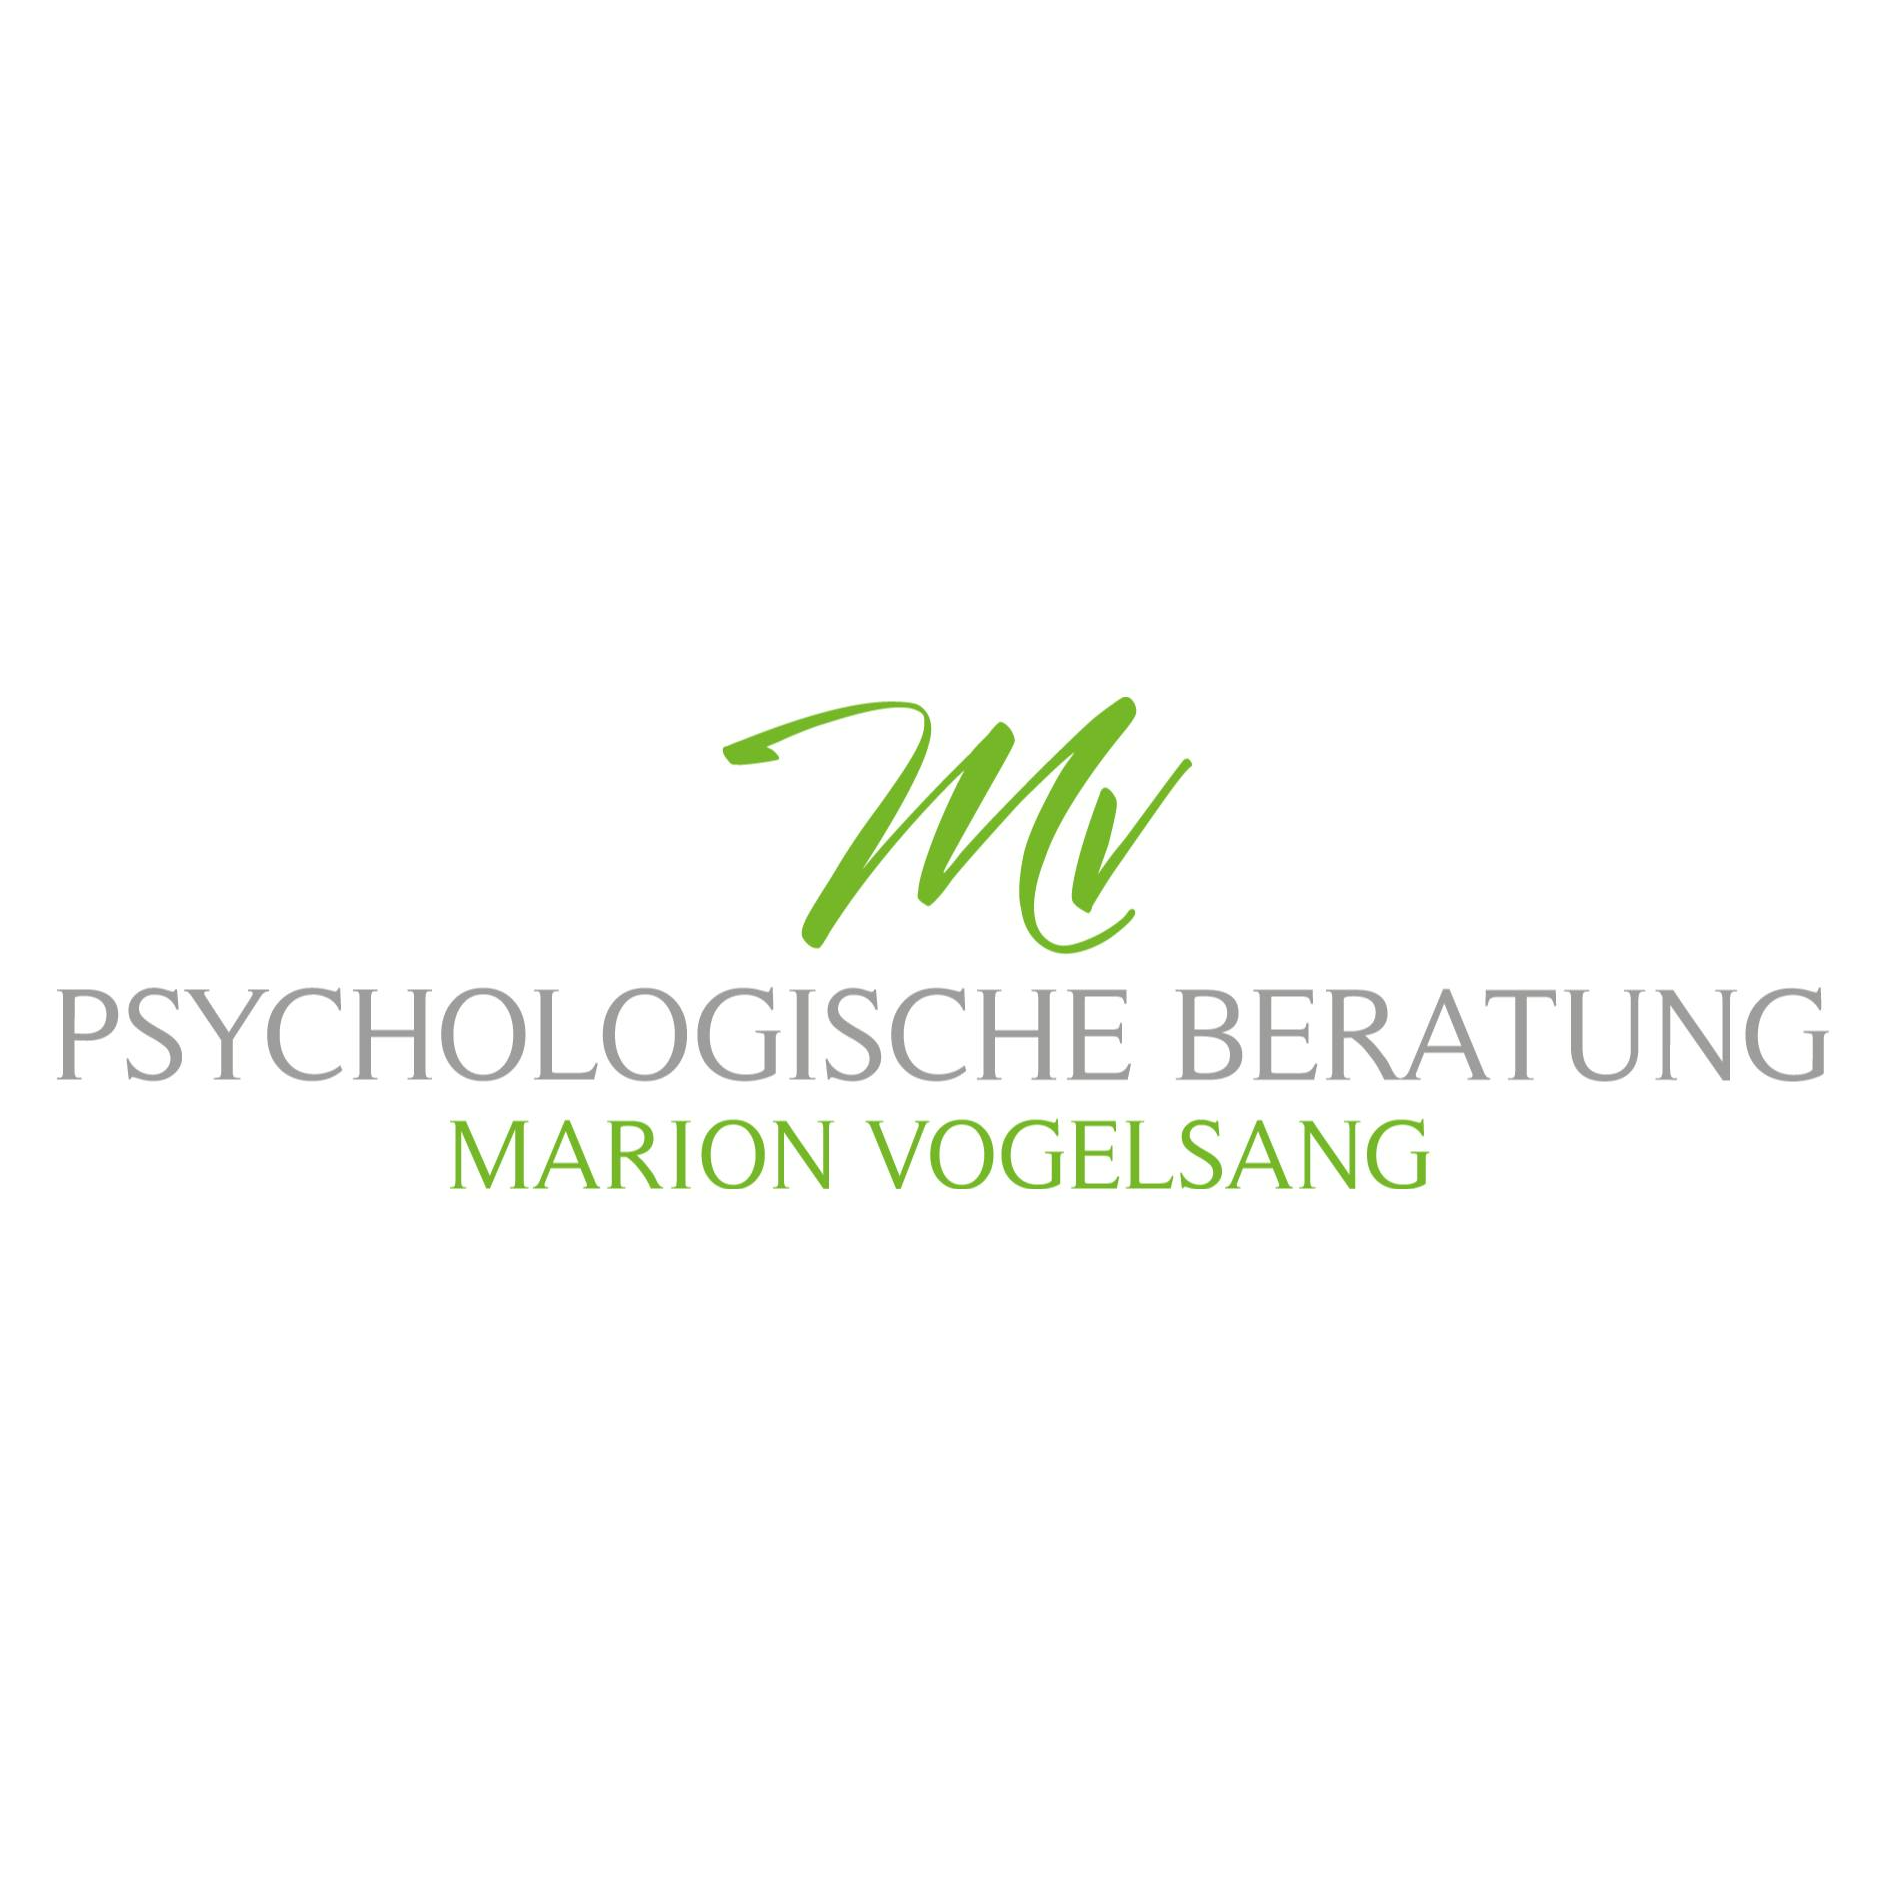 Logo von Psychologische Beratung Marion Vogelsang